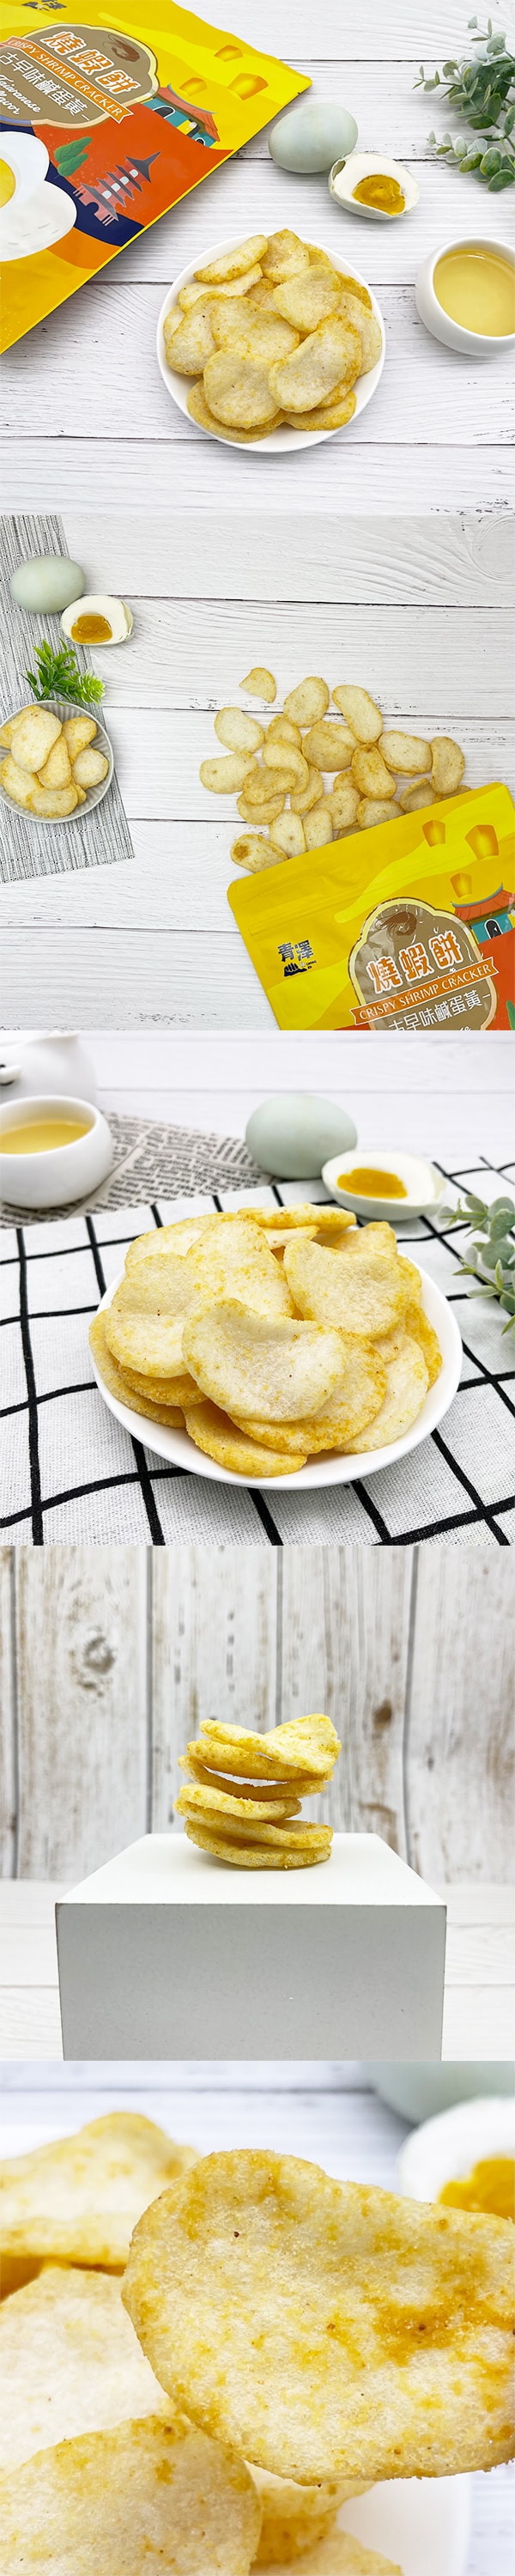 [台湾直邮]台东青泽 烧虾饼-古早味咸蛋黄口味 100g